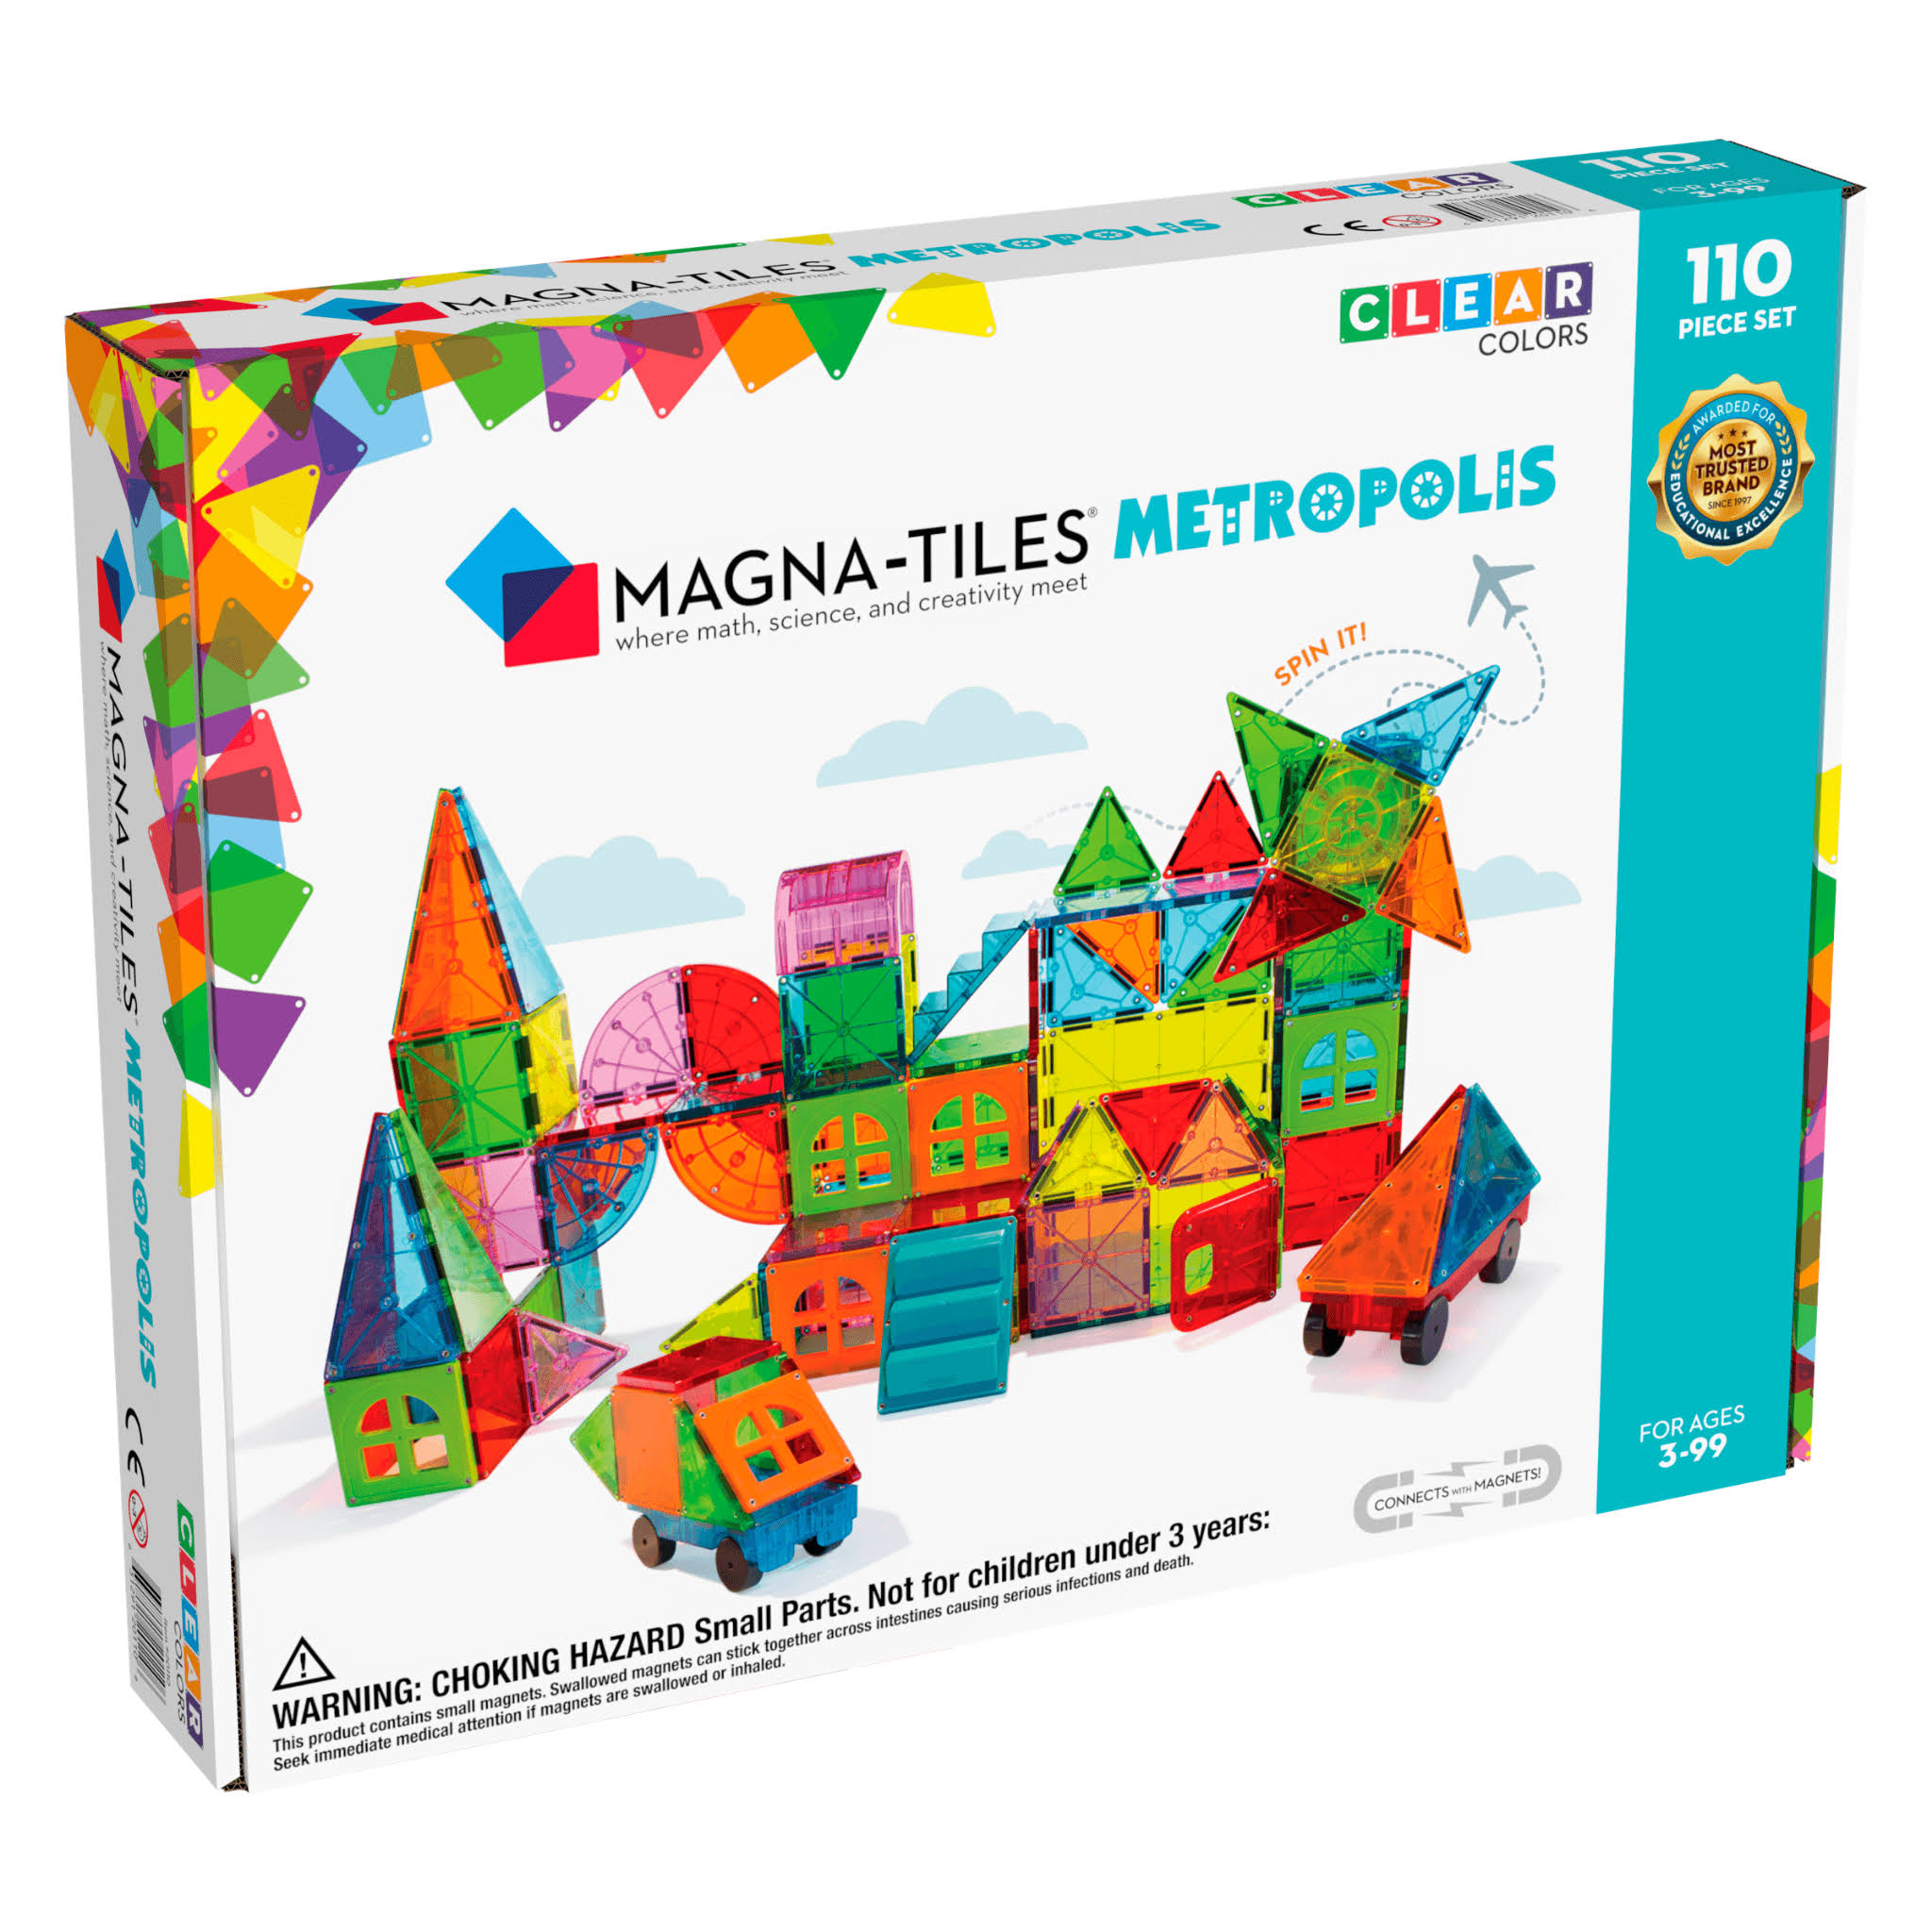 Magna Tiles - 110 Piece Metropolis Set